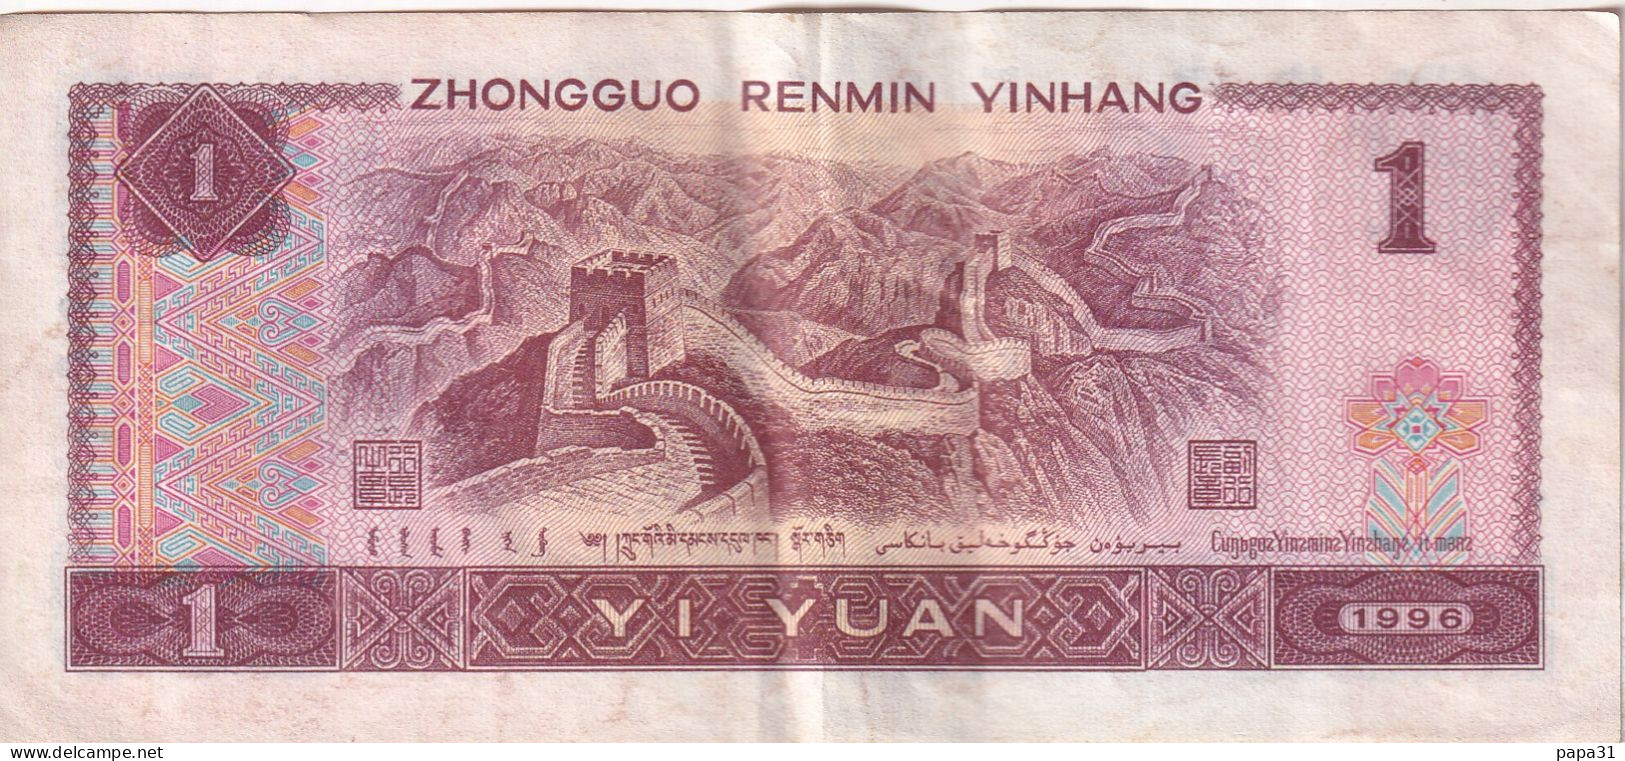 Billet De Banque - ZHONGGUO RENMIN YINHANG 1 YI YUAN - Cina